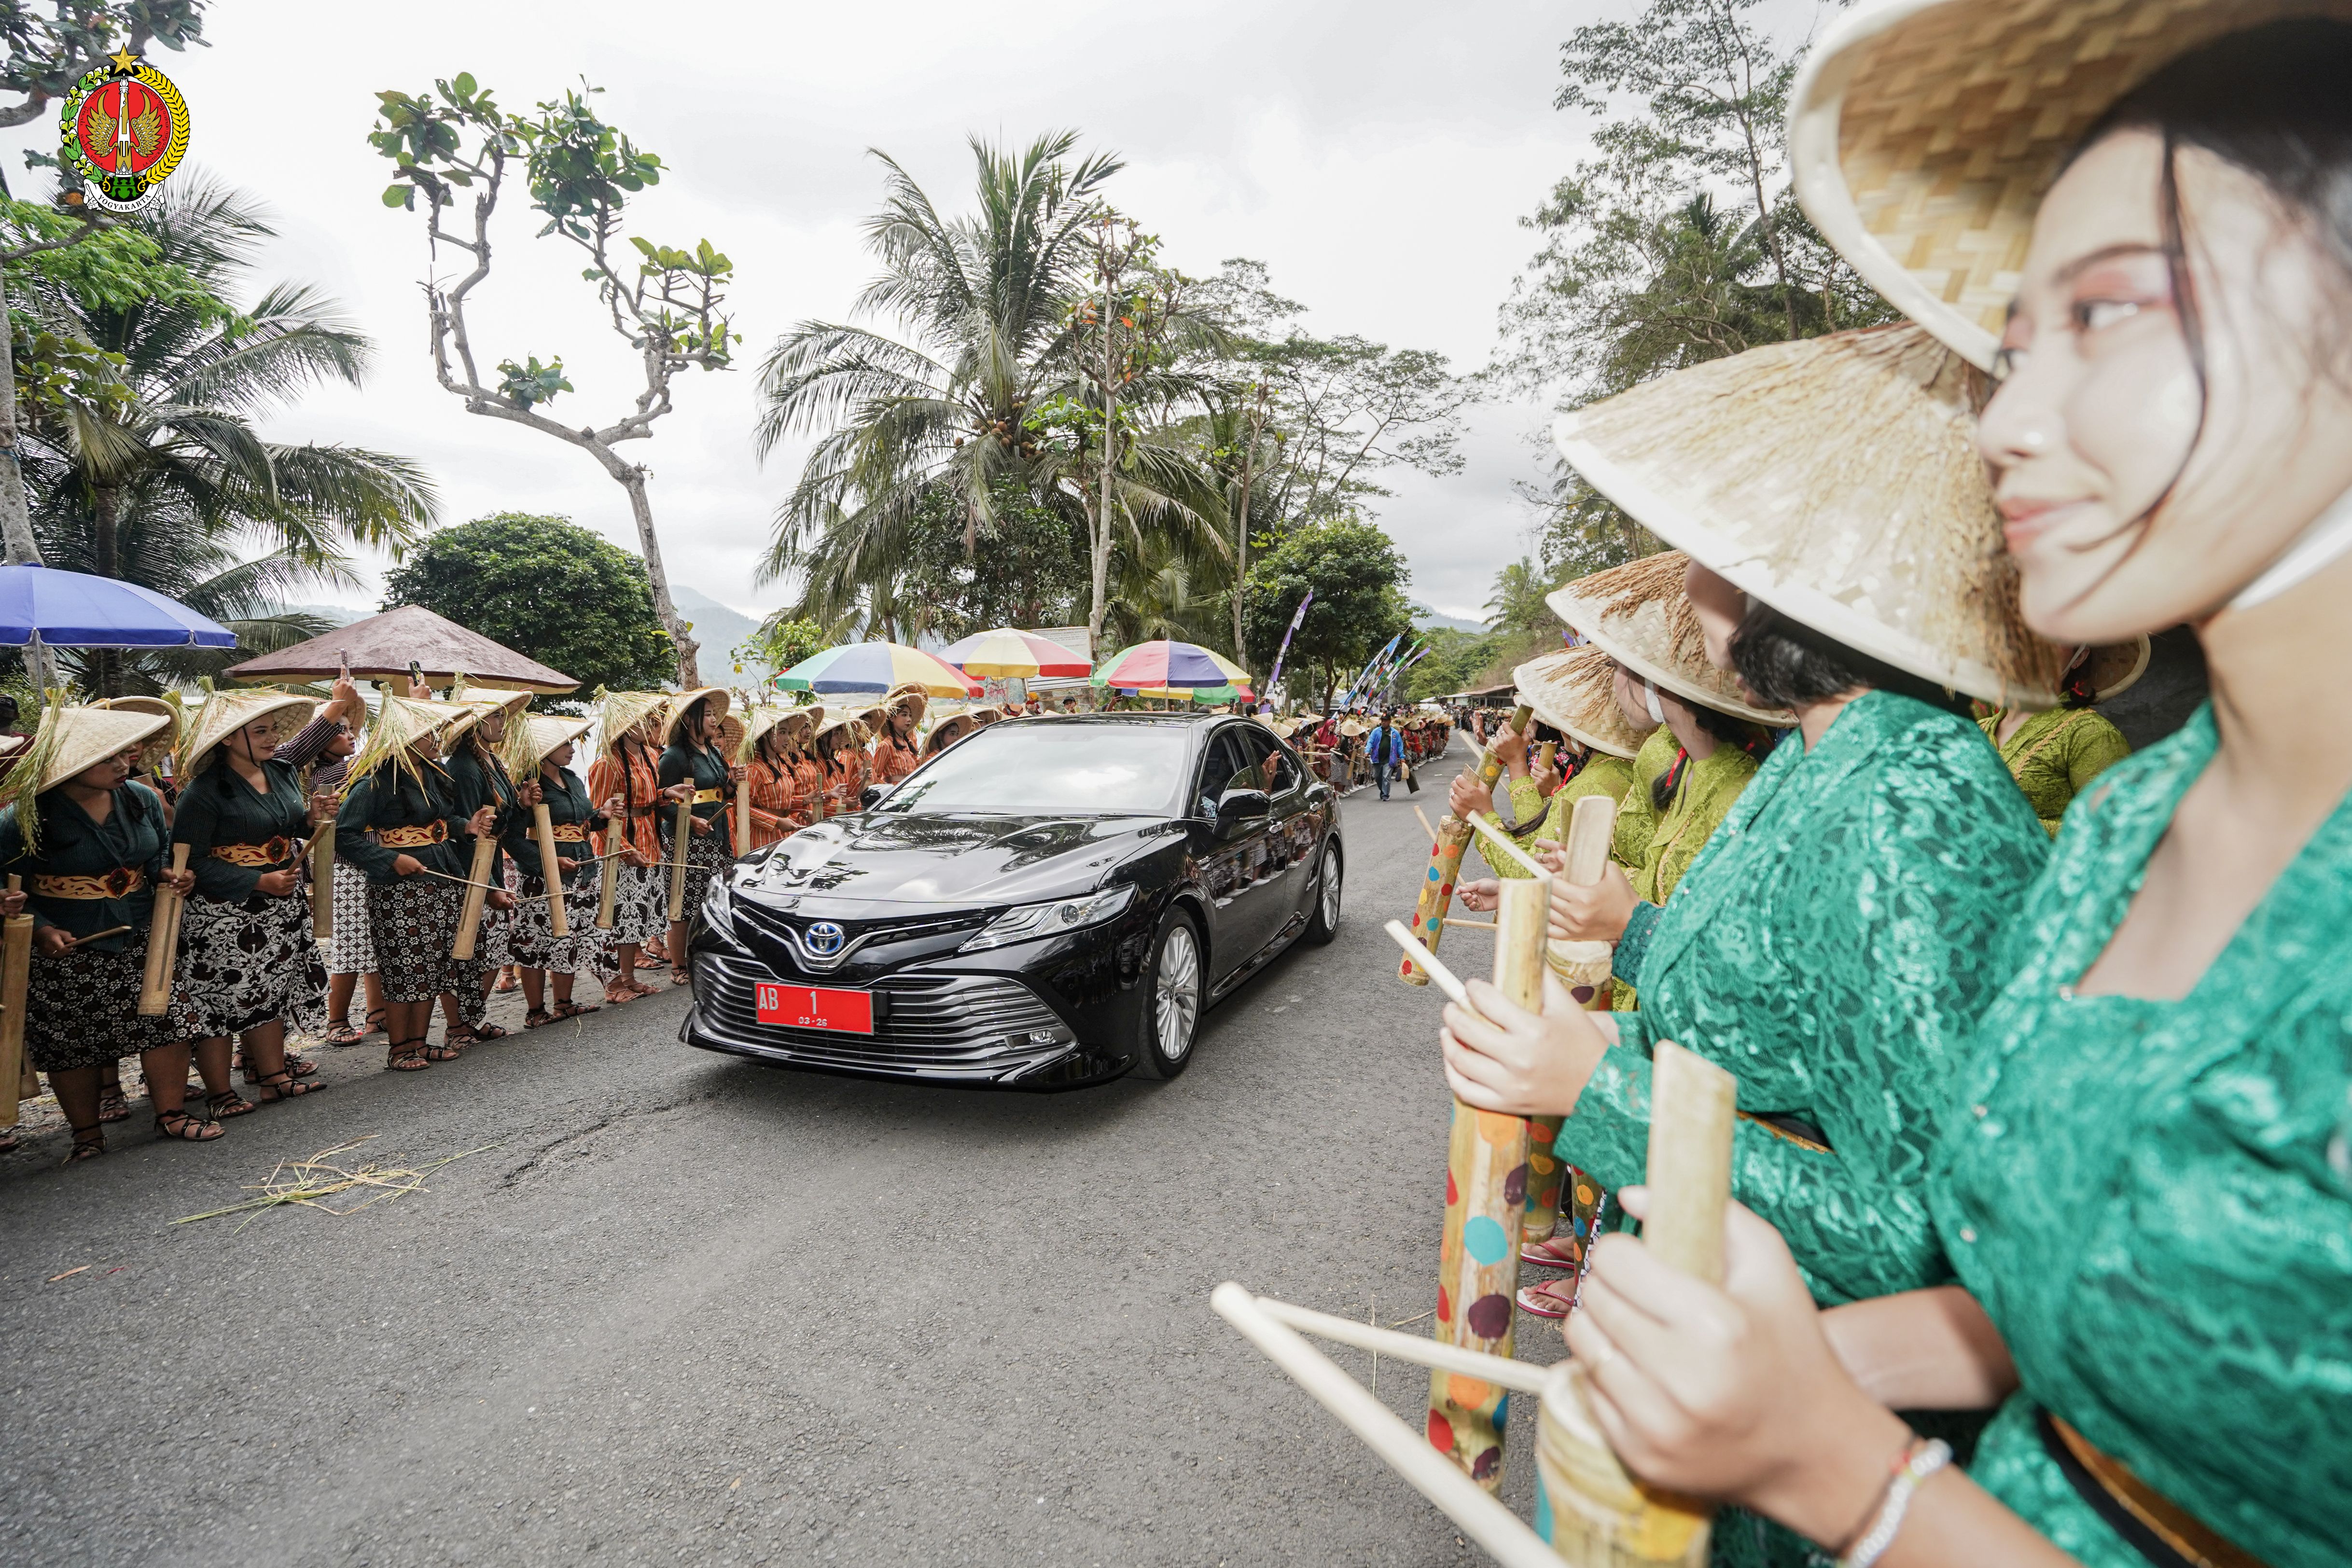 Membuka FKY 2023, Sri Sultan Ingatkan Akar Budaya Ketahanan Pangan Yogyakarta